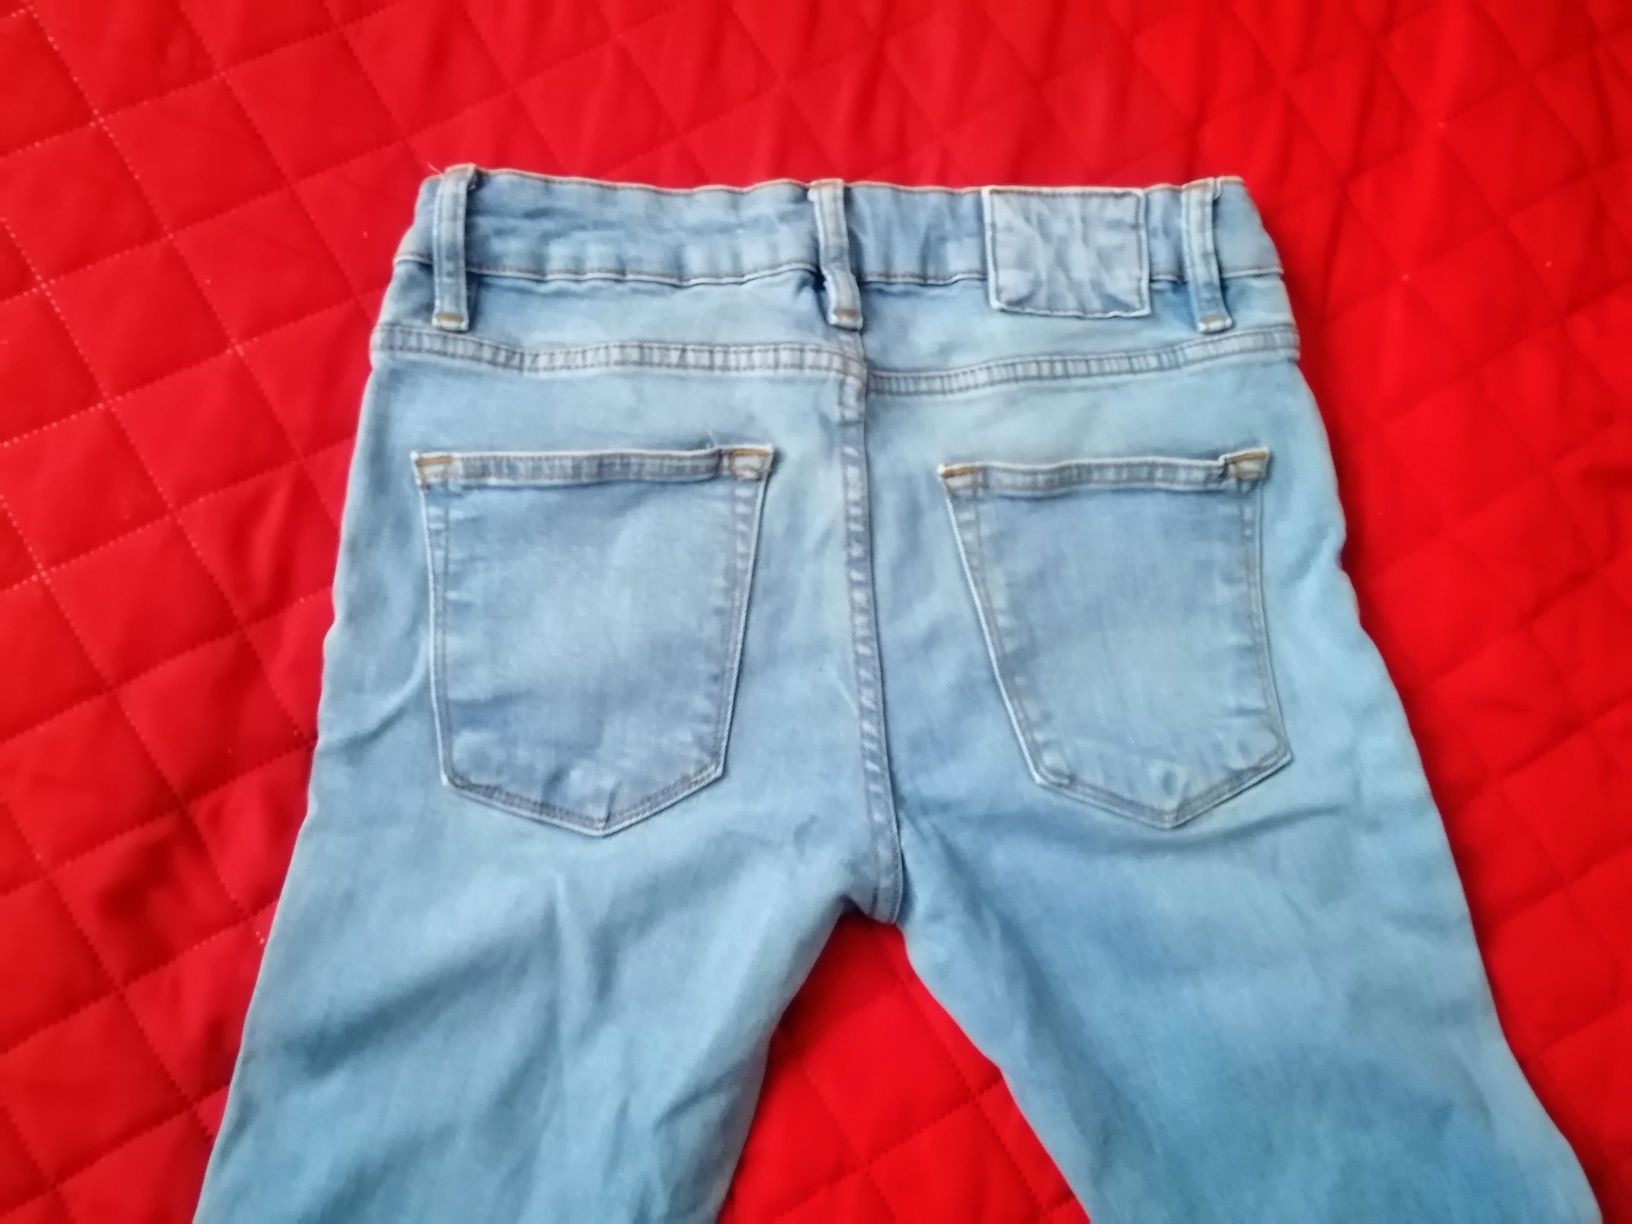 Spodnie jeansy jasno niebieskie